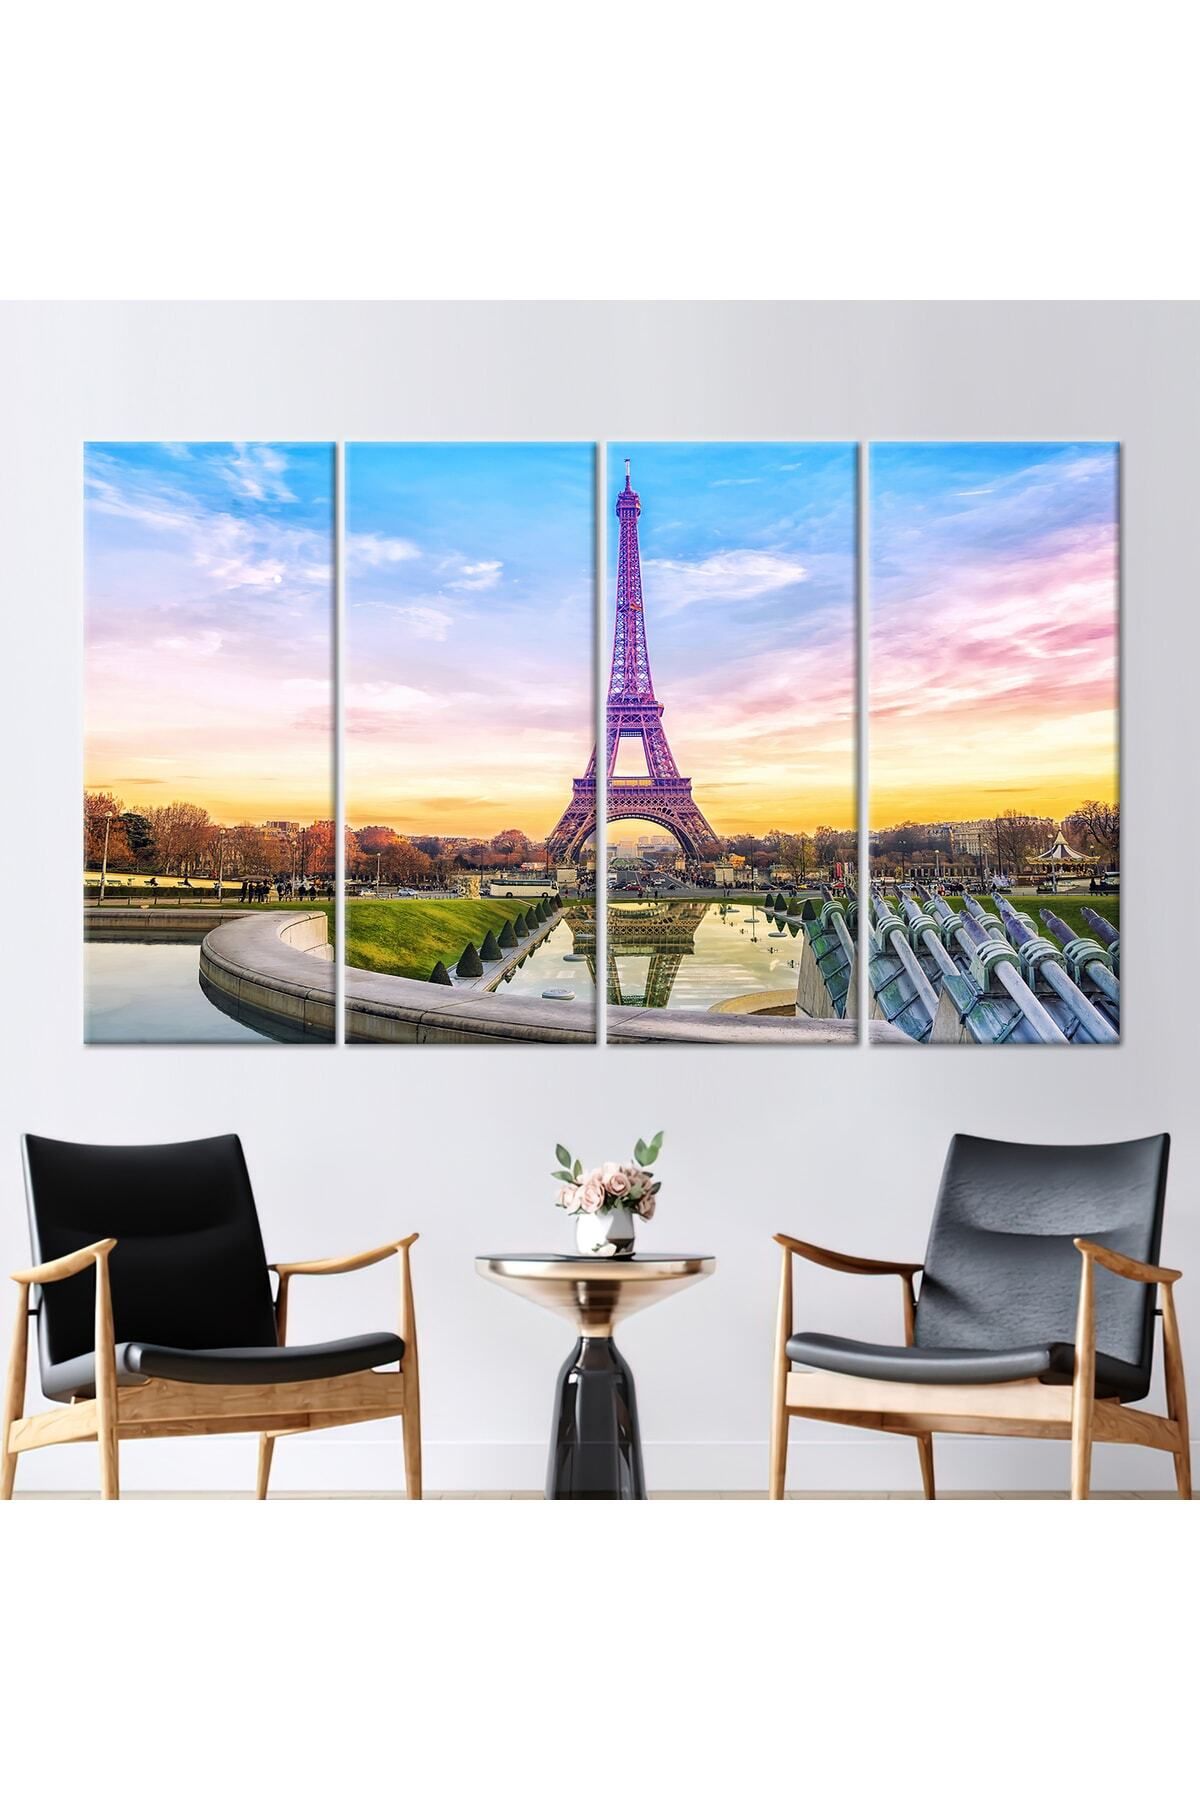 Kayra Export Tablo, Kanvas Tablo Seyahat Fransa Sanat Eiffel Kulesi